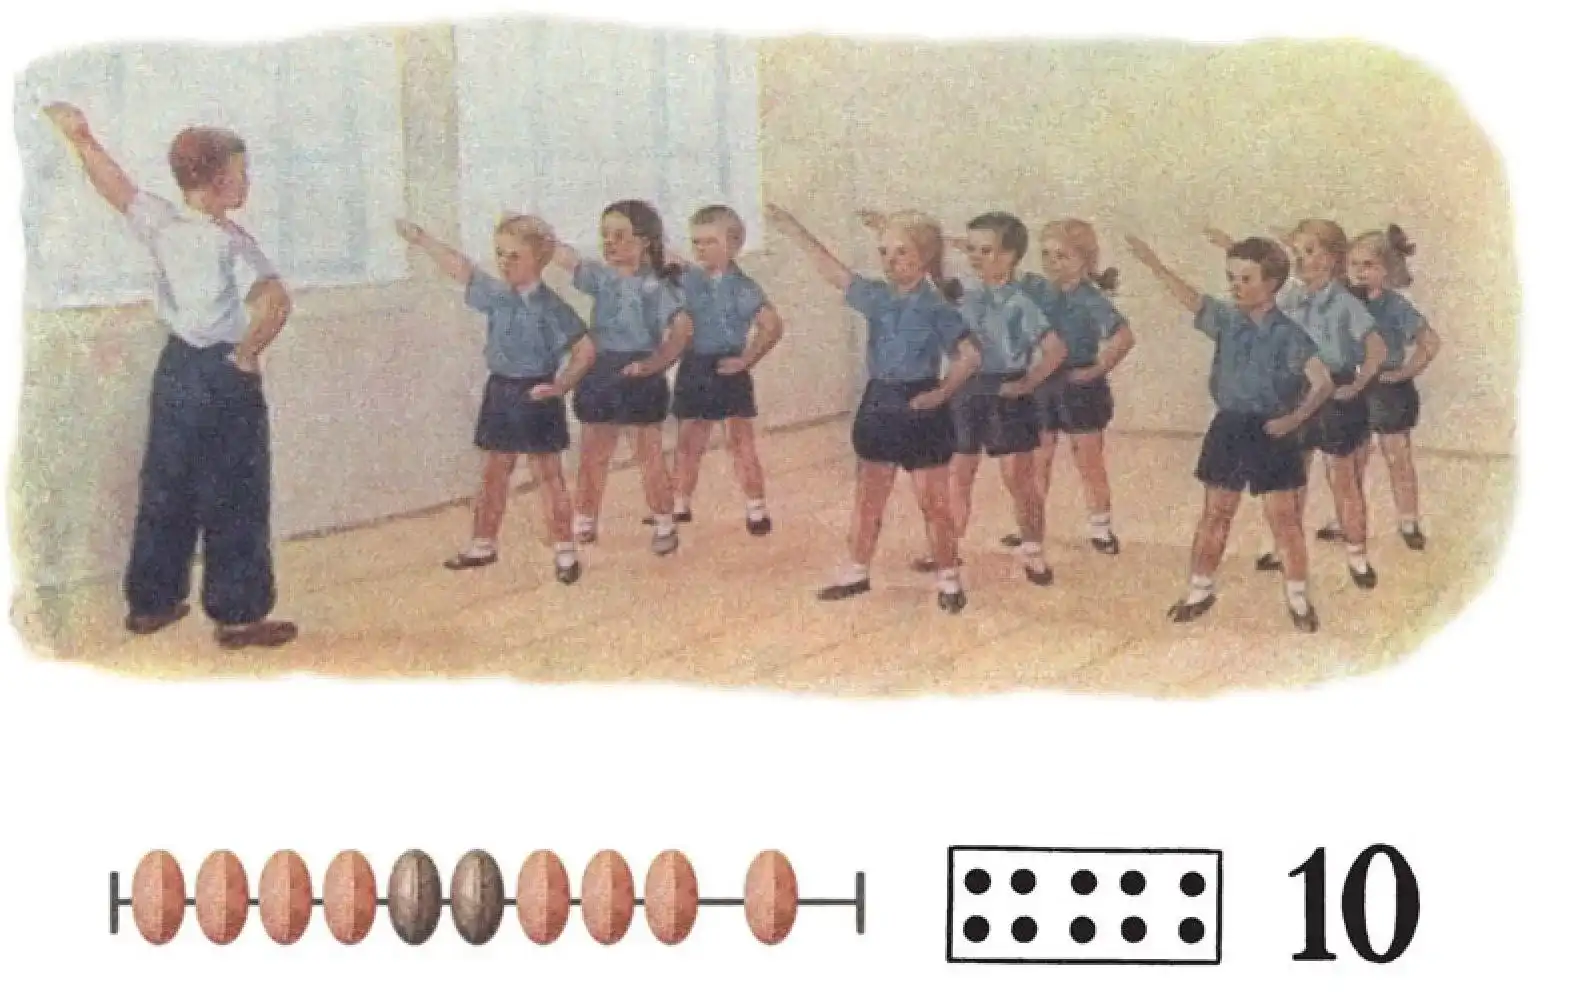 10 children doing exercises